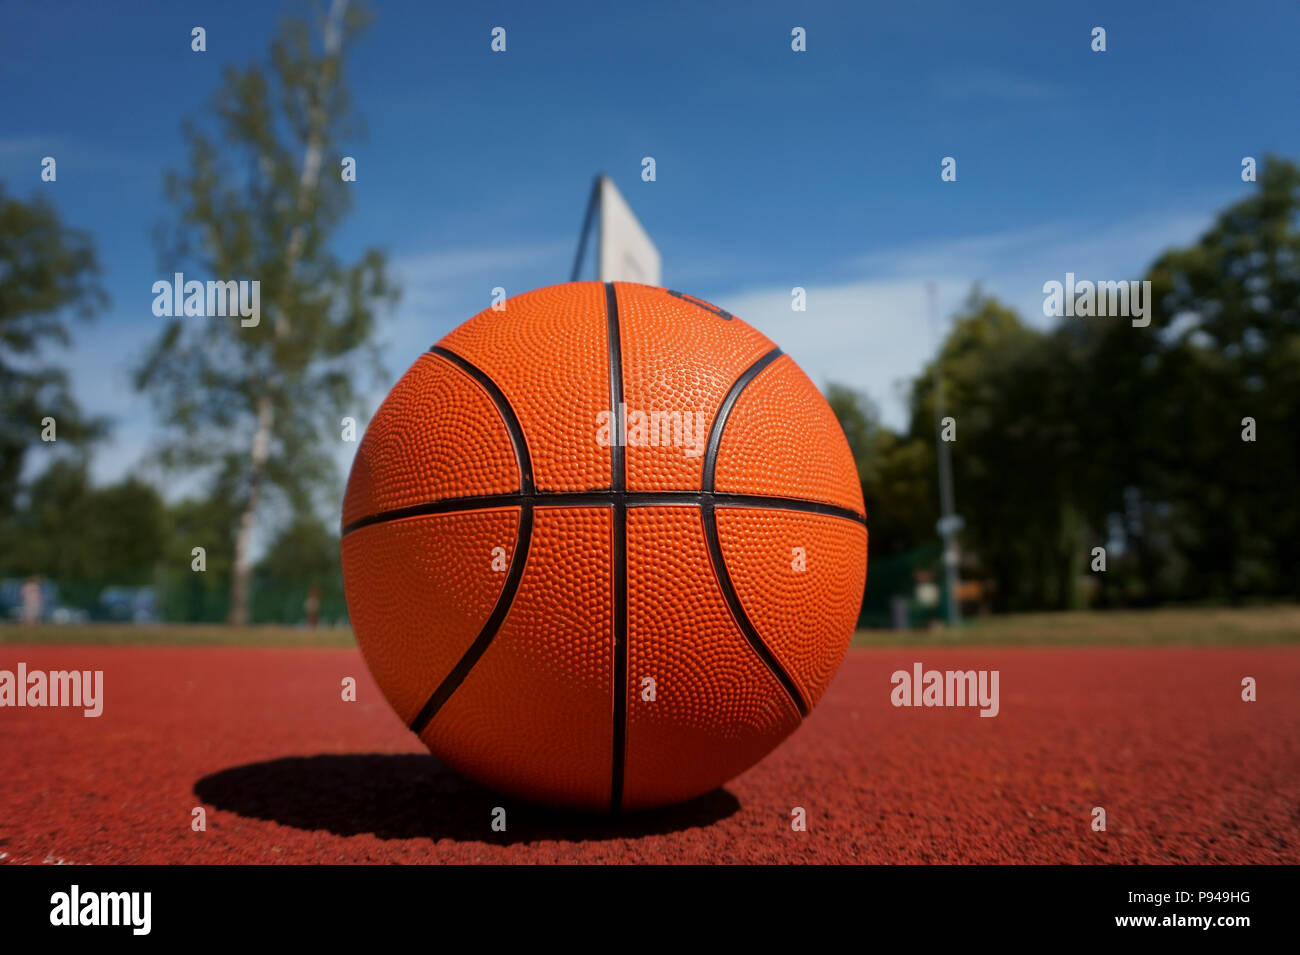 Basketball auf outdoor Basketball Boden vor den Bäumen und blauen bewölkten  Himmel. Kostenlose Kopie Stockfotografie - Alamy